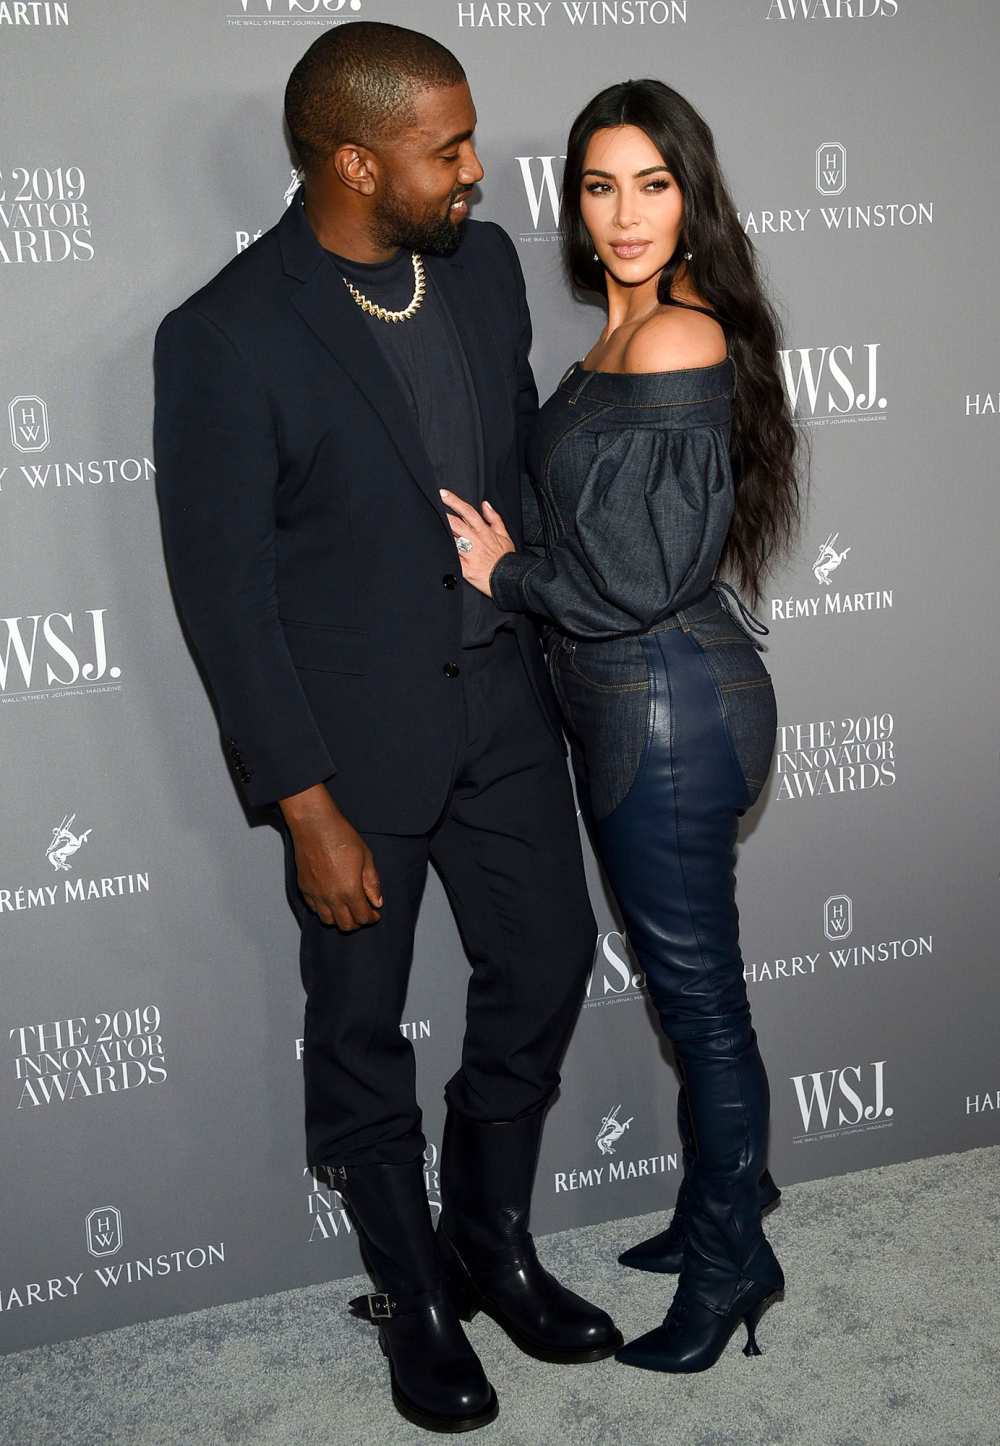 Kanye West Recreates Kim Kardashian Wedding at Chicago 'Donda' Event